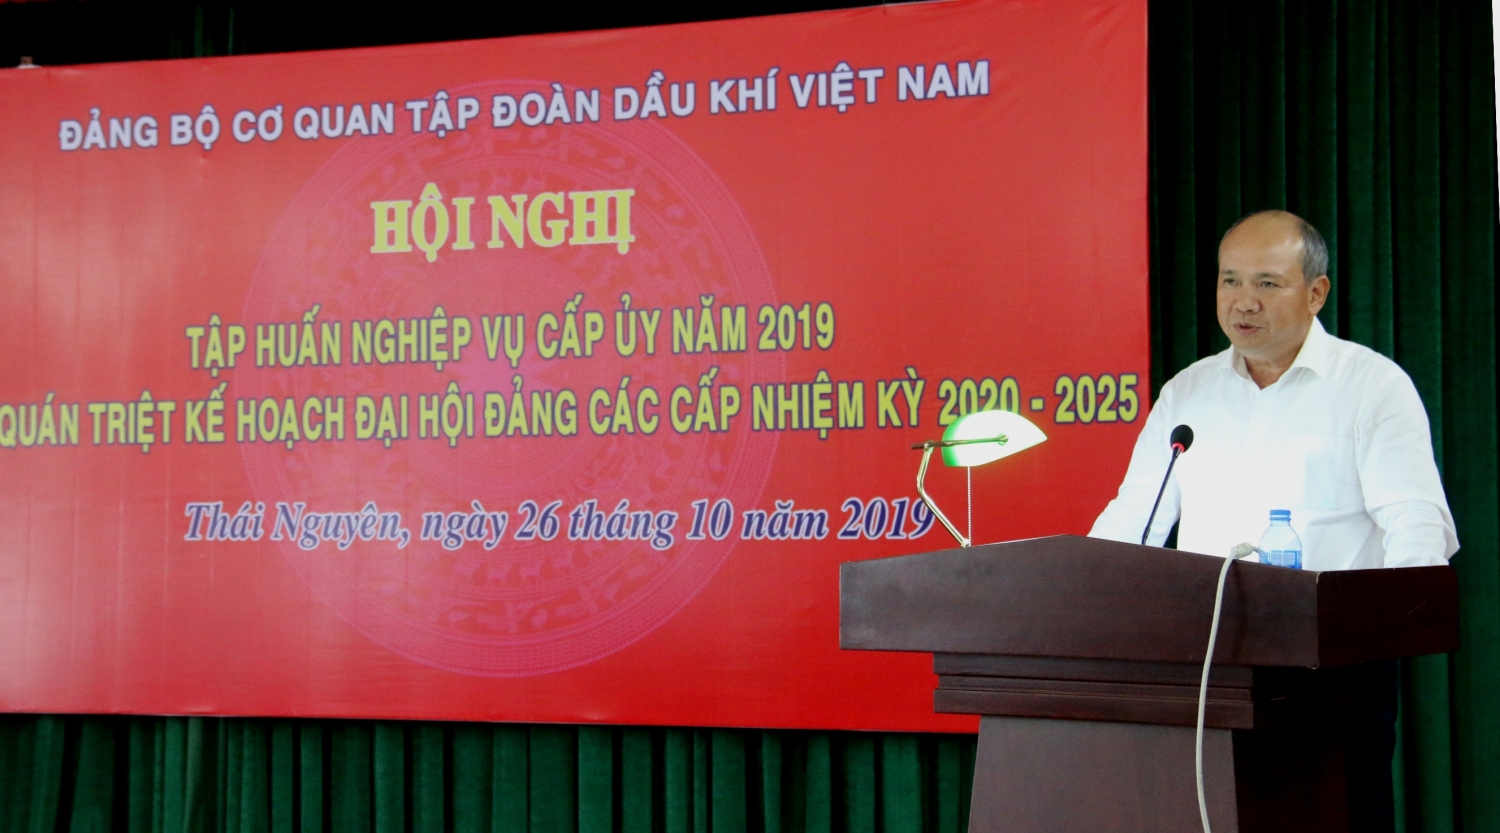 Đảng ủy Cơ quan Tập đoàn tổ chức Hội nghị bồi dưỡng nghiệp vụ cấp ủy năm 2019